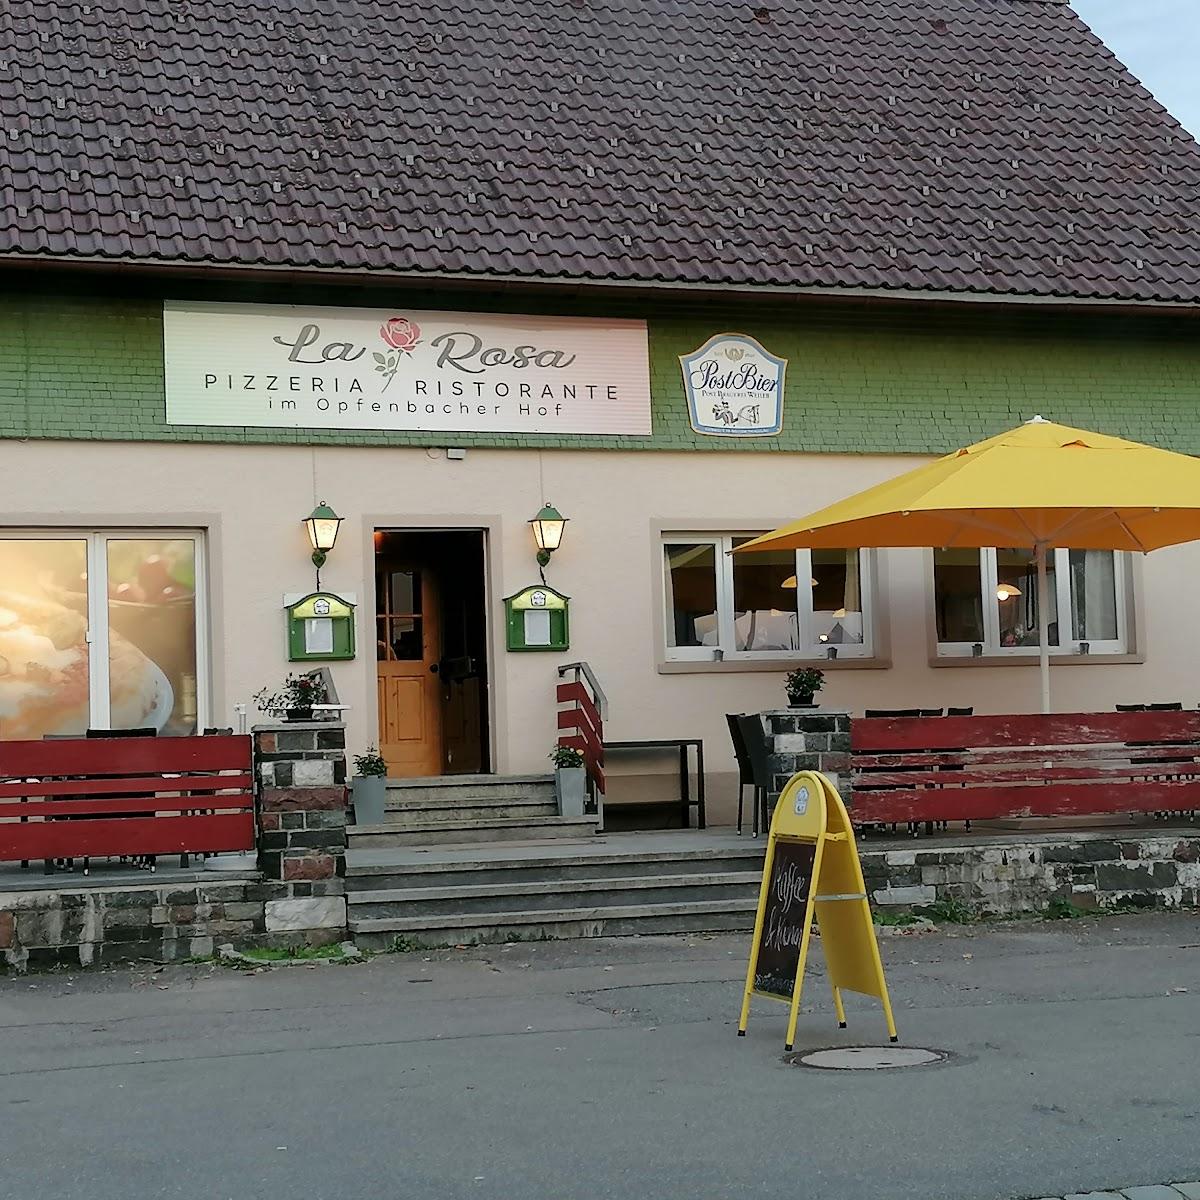 Restaurant "Pizzeria La Rosa" in Opfenbach